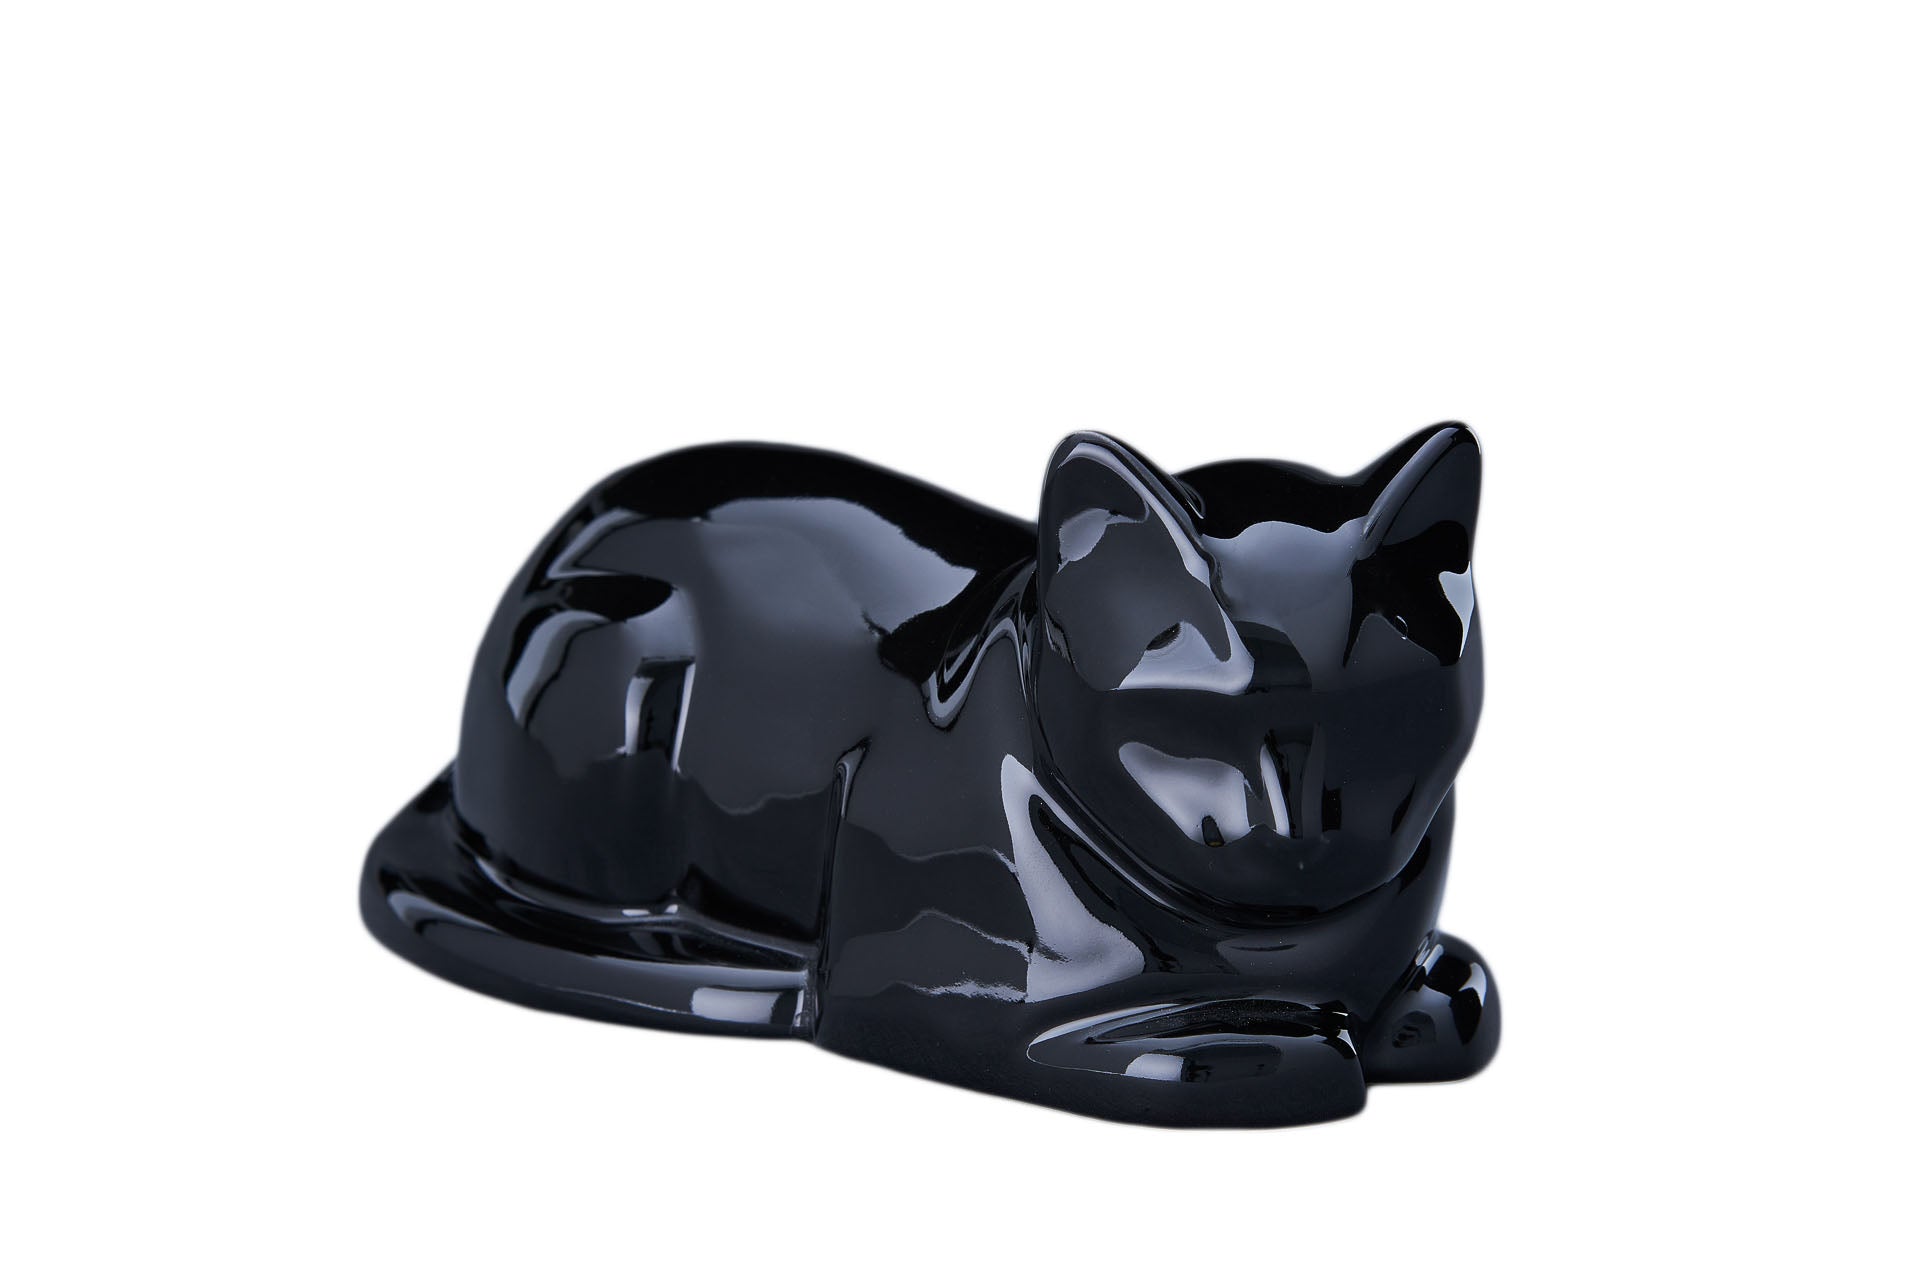 Kaufen schwarz-glanzend Tierurne Liegende Katze Keramik